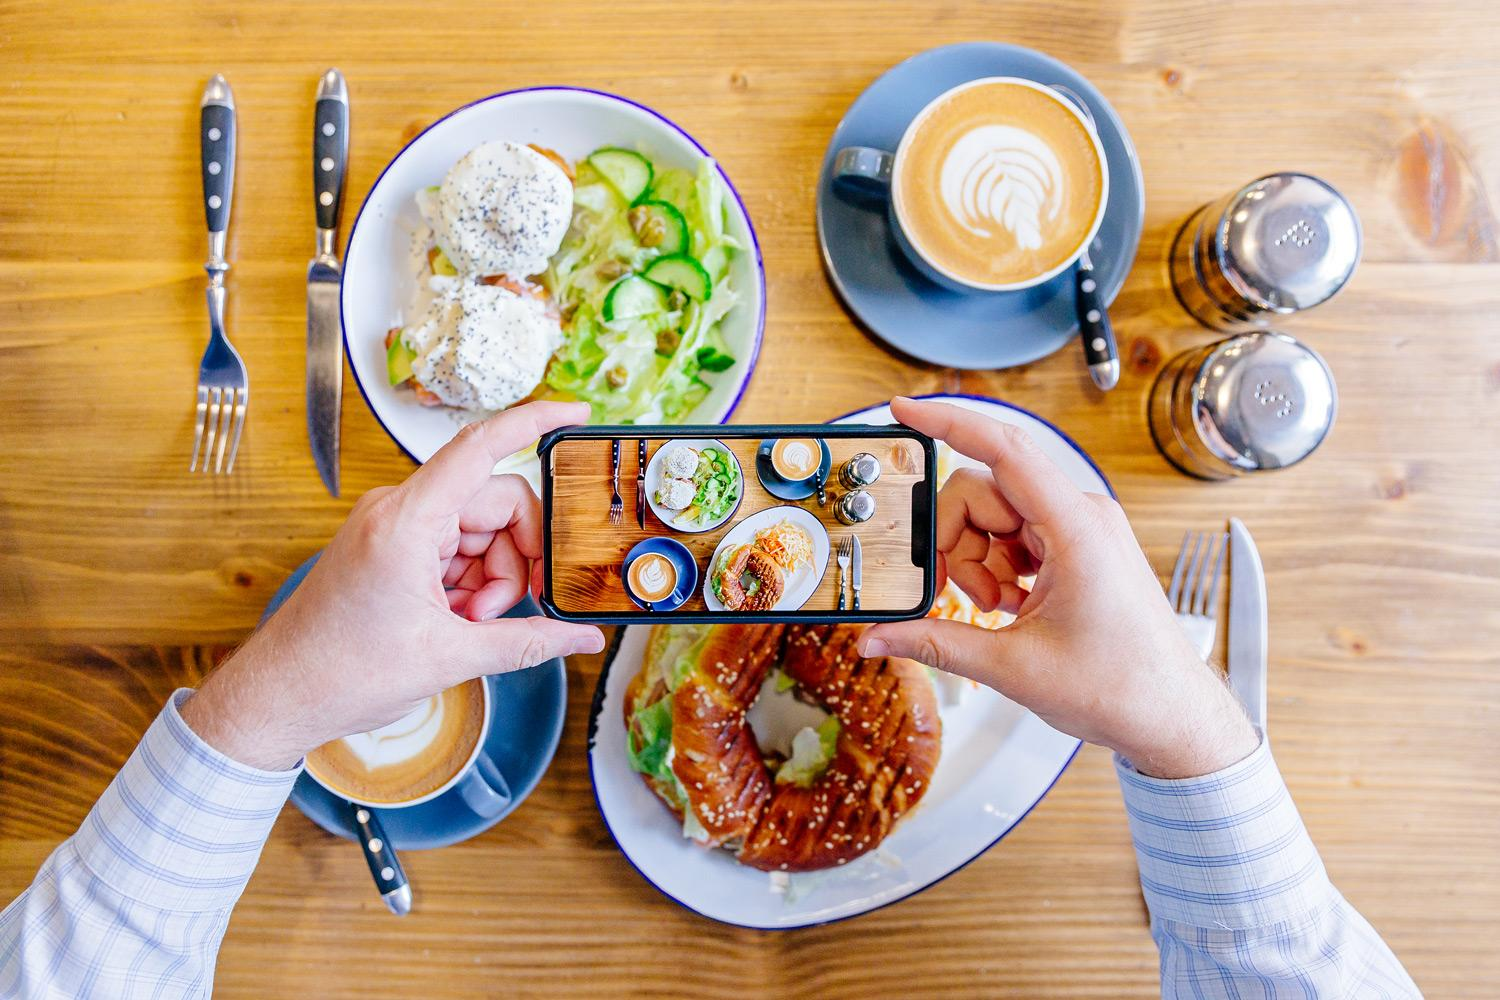 Tuyệt kỹ chụp ảnh đồ ăn đẹp bằng điện thoại, nhìn là muốn chén